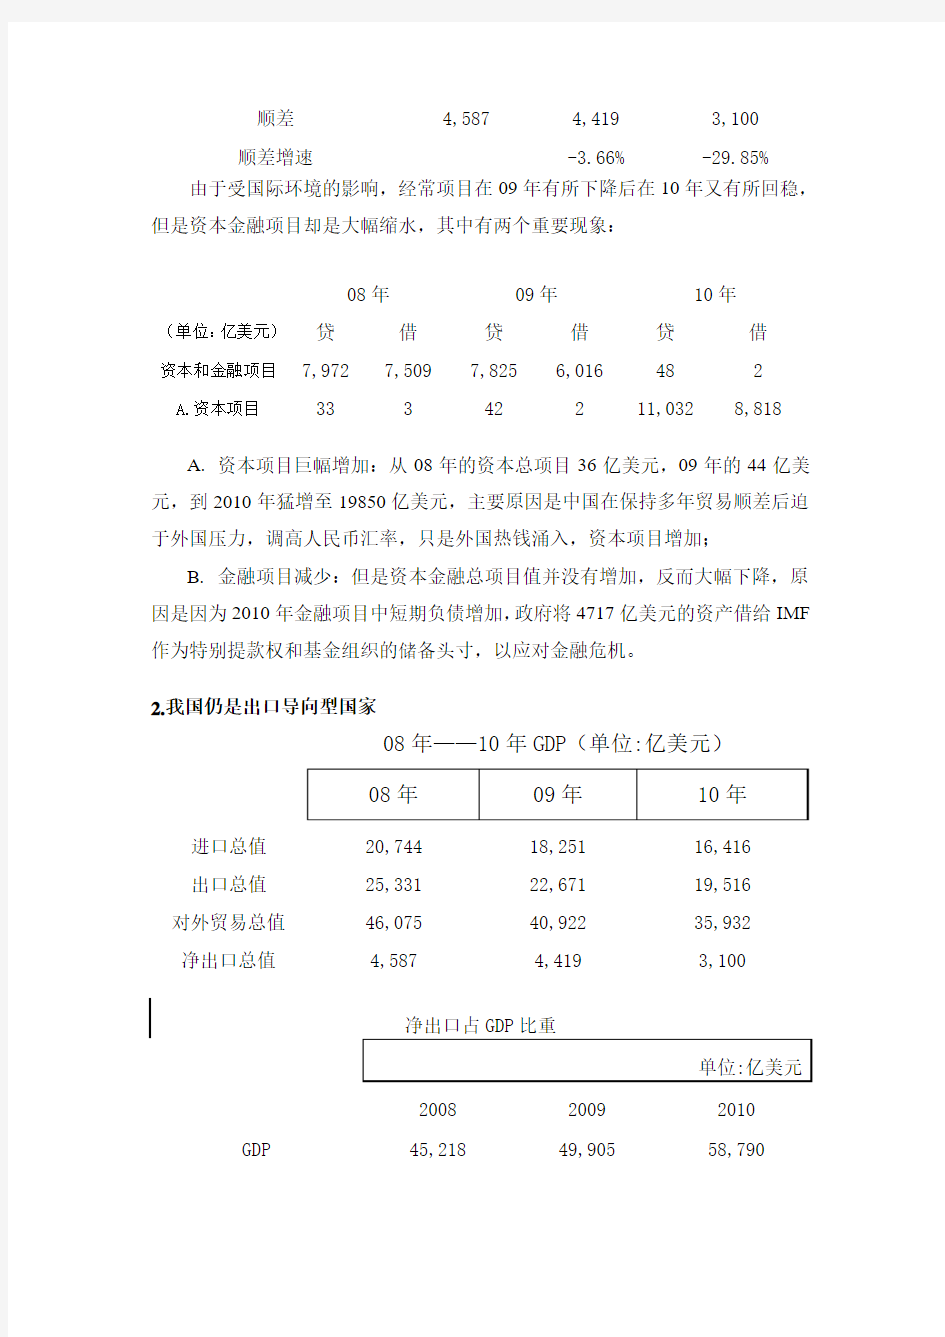 08年-10年中国国际收支分析报告